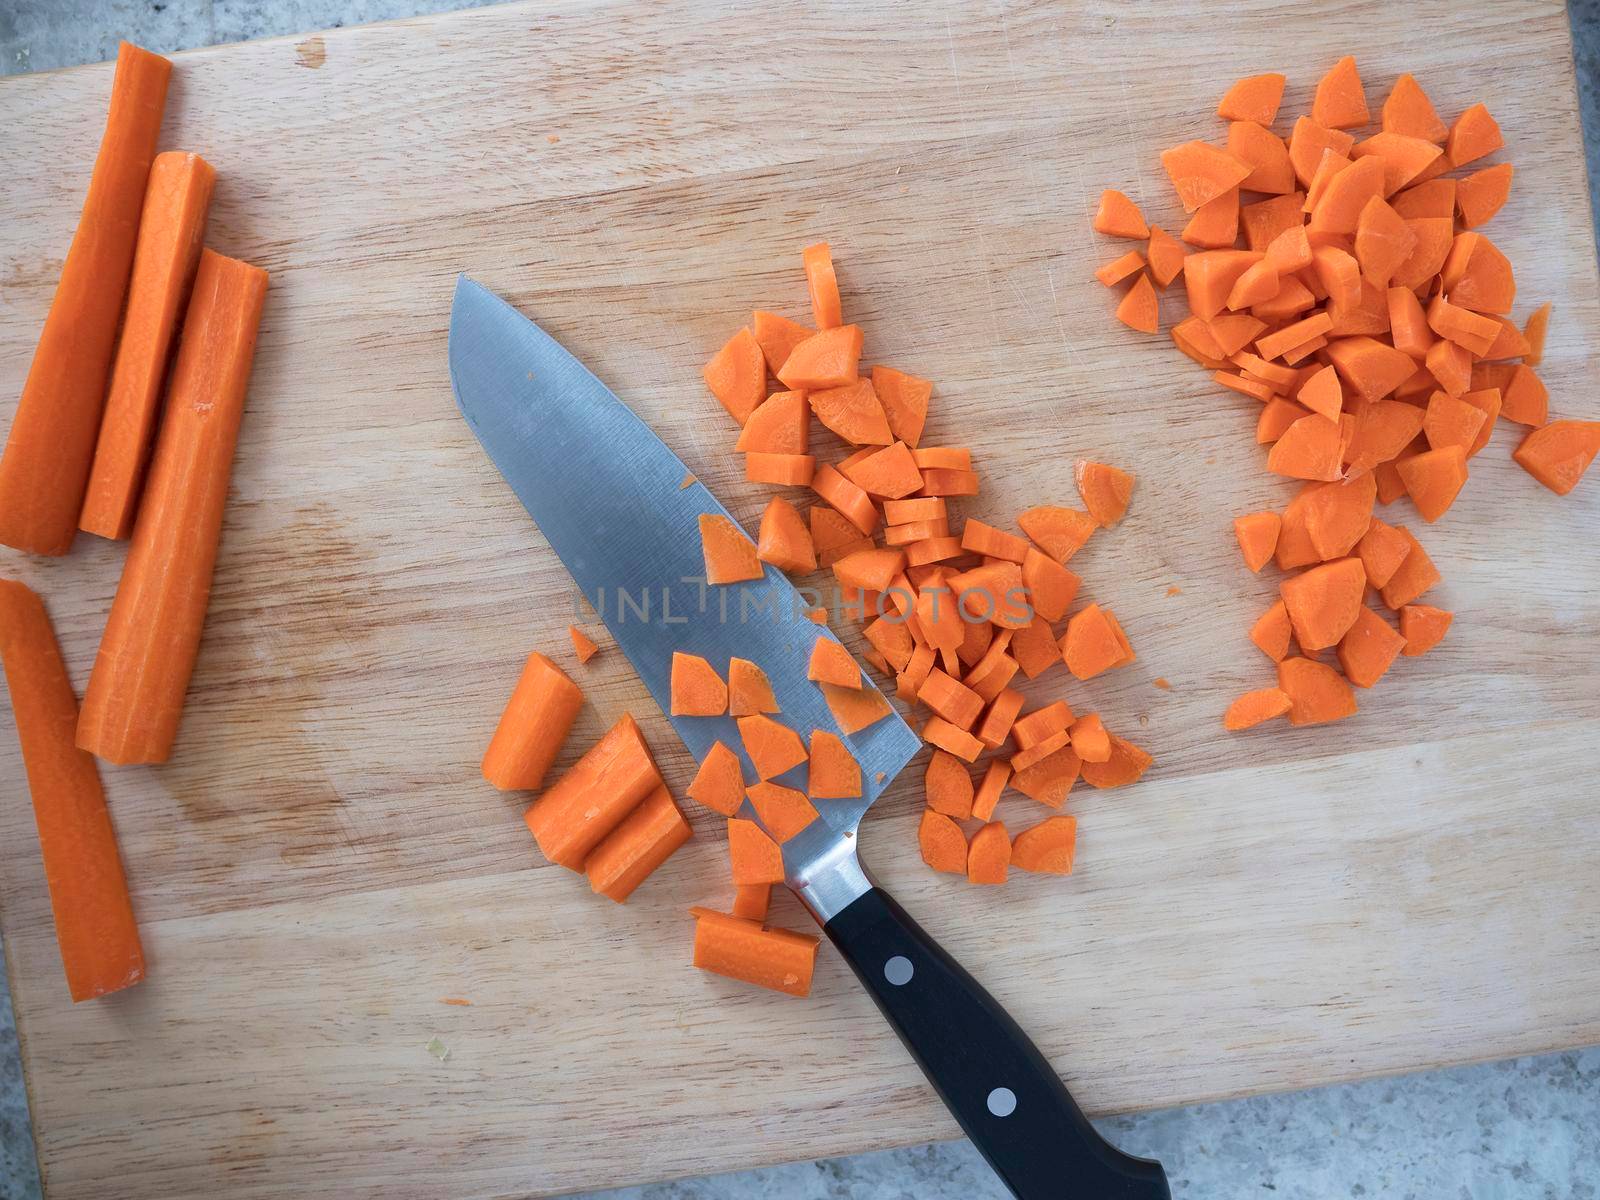 Chopping Carrots by charlotteLake